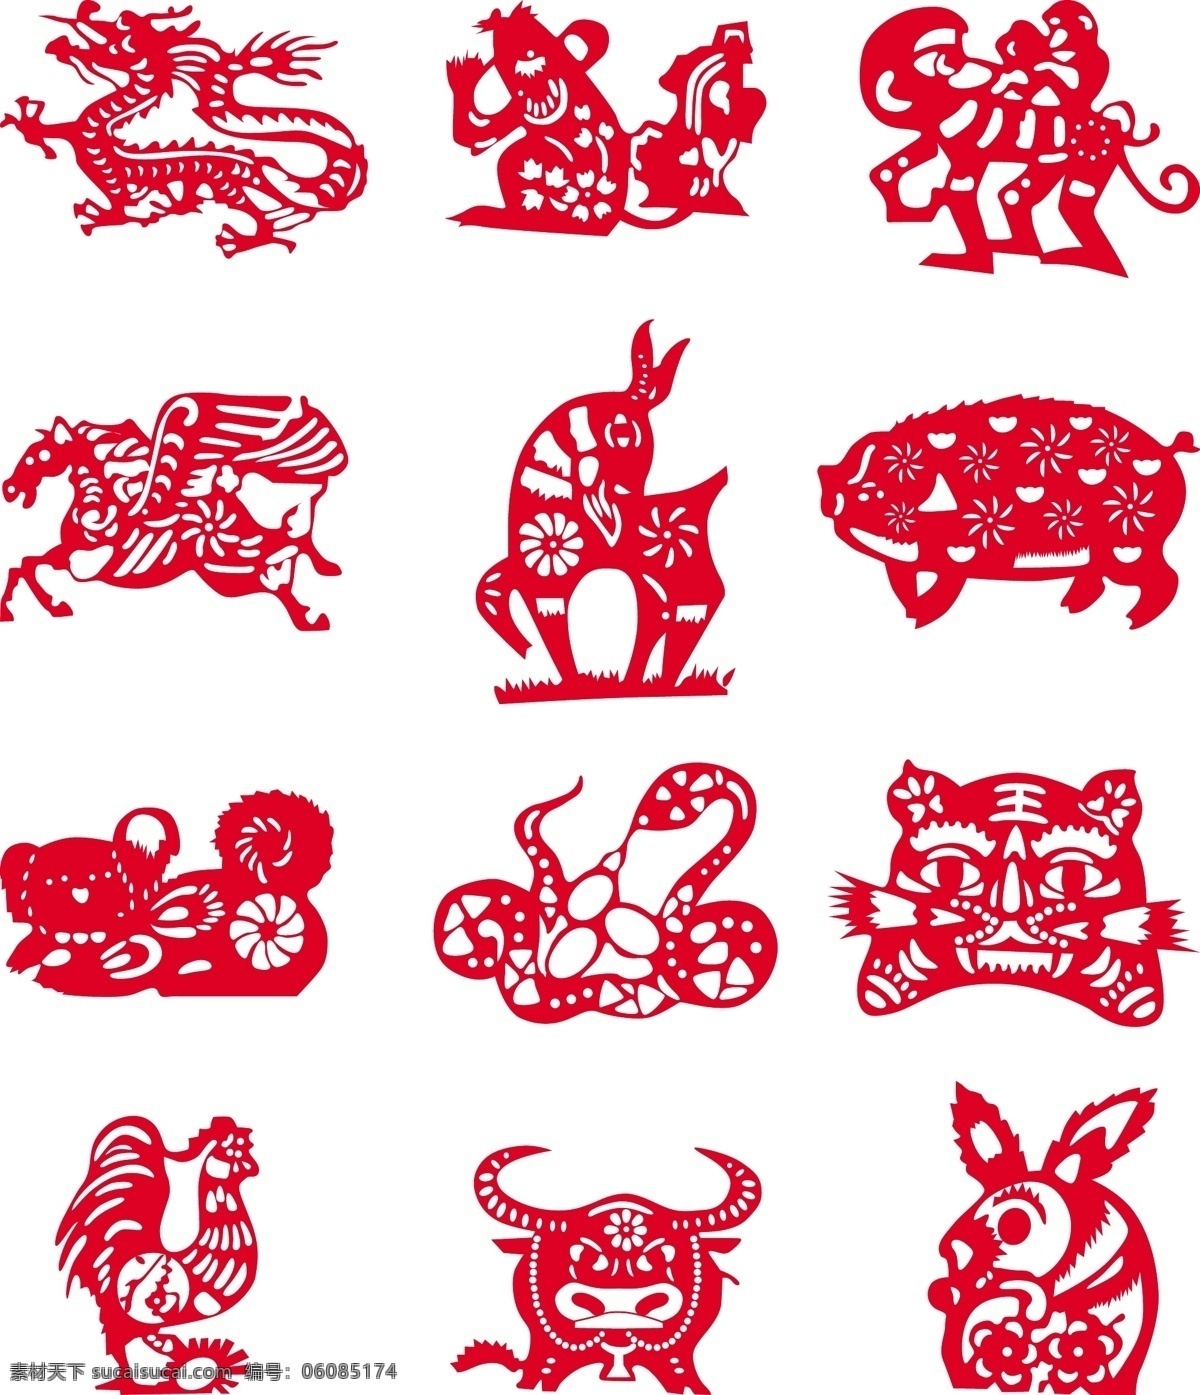 十二生肖 剪纸 装饰 图案 艺术 红色 矢量素材 设计素材